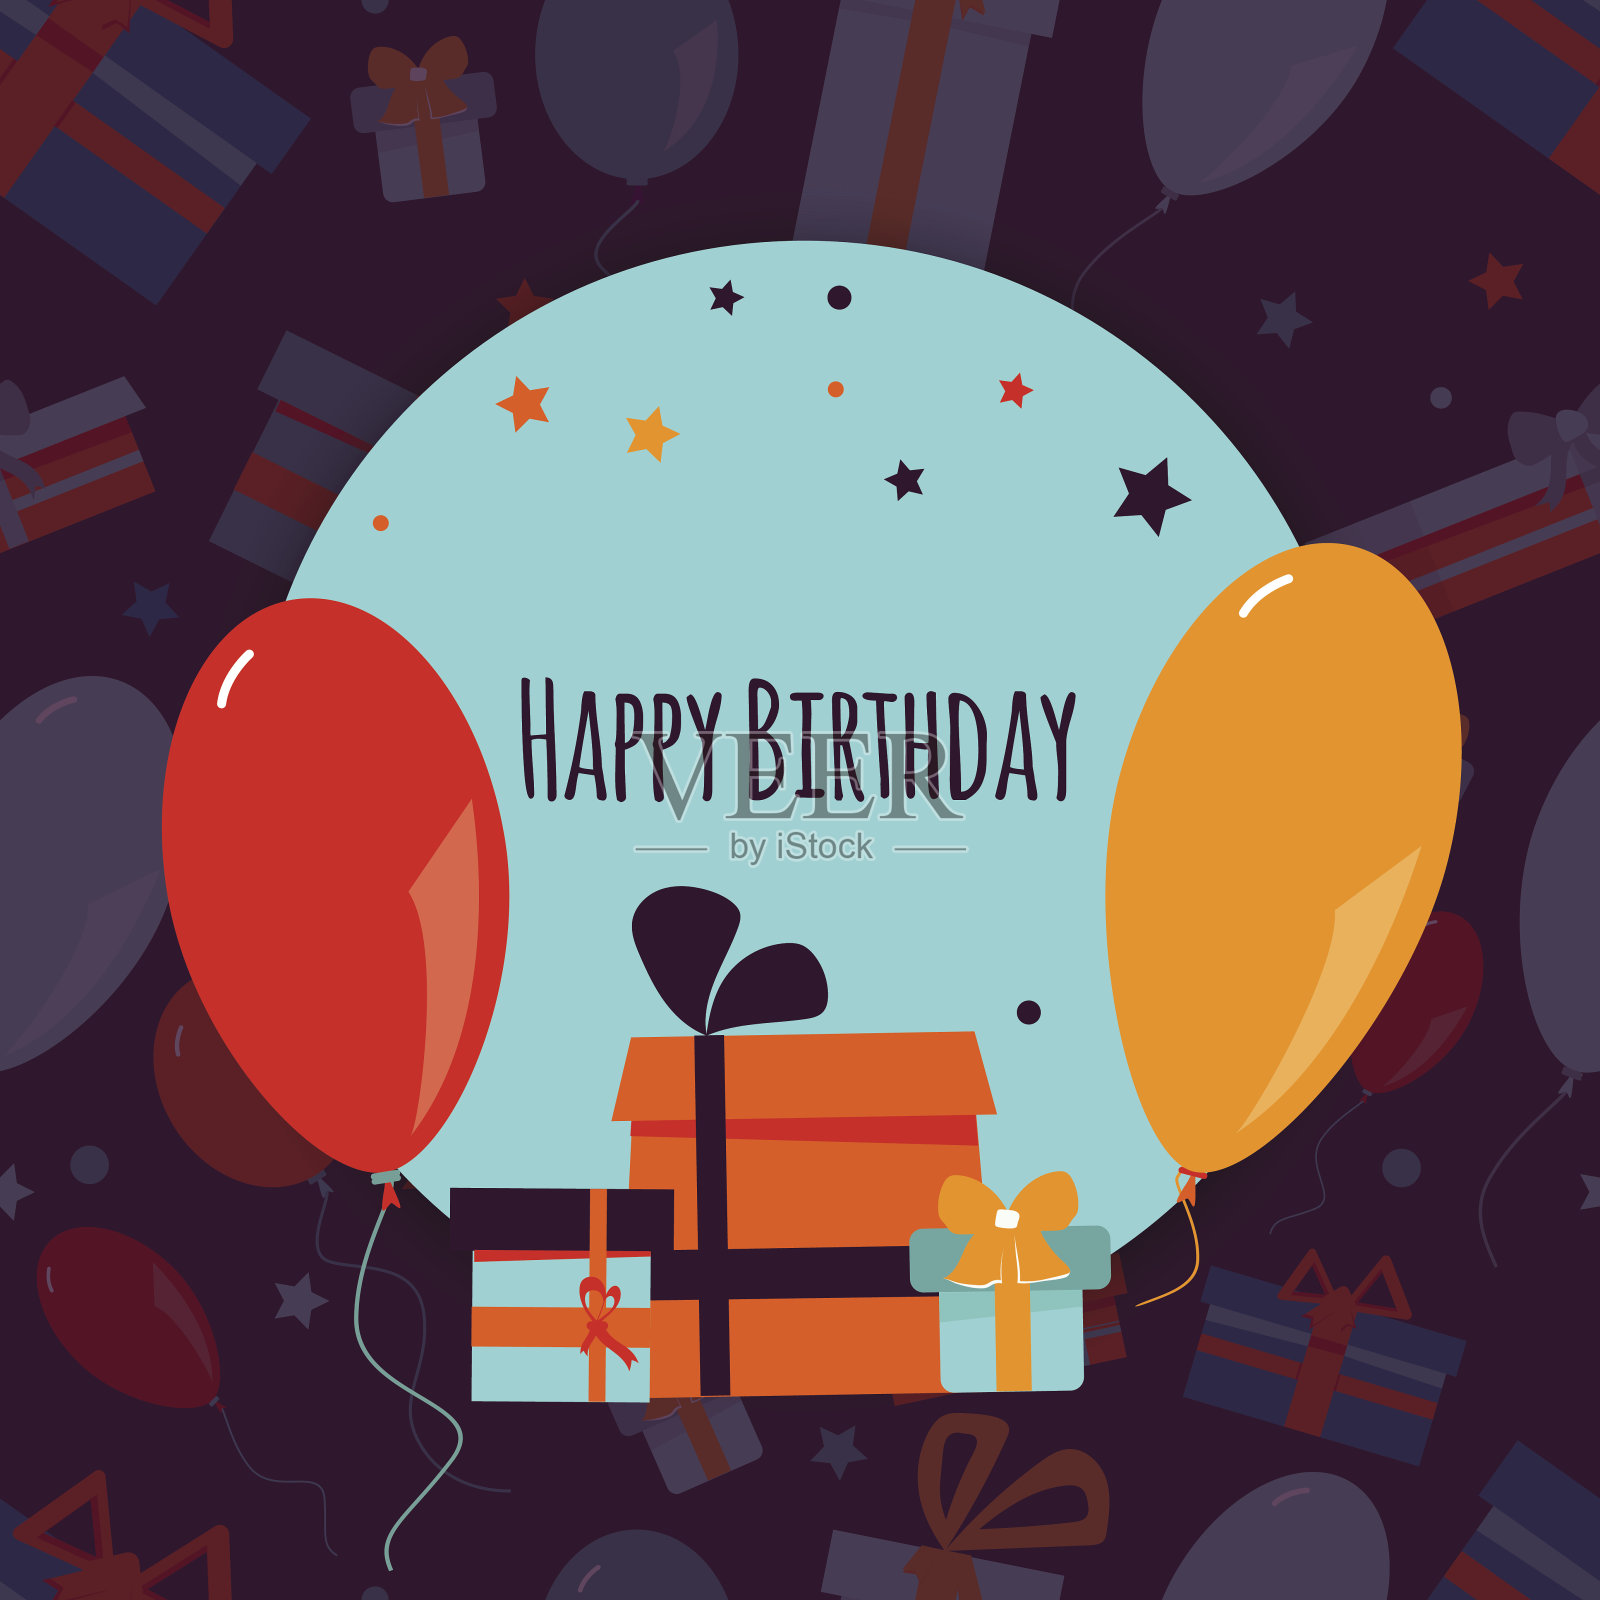 生日快乐背景彩色礼盒和气球。向量插画图片素材